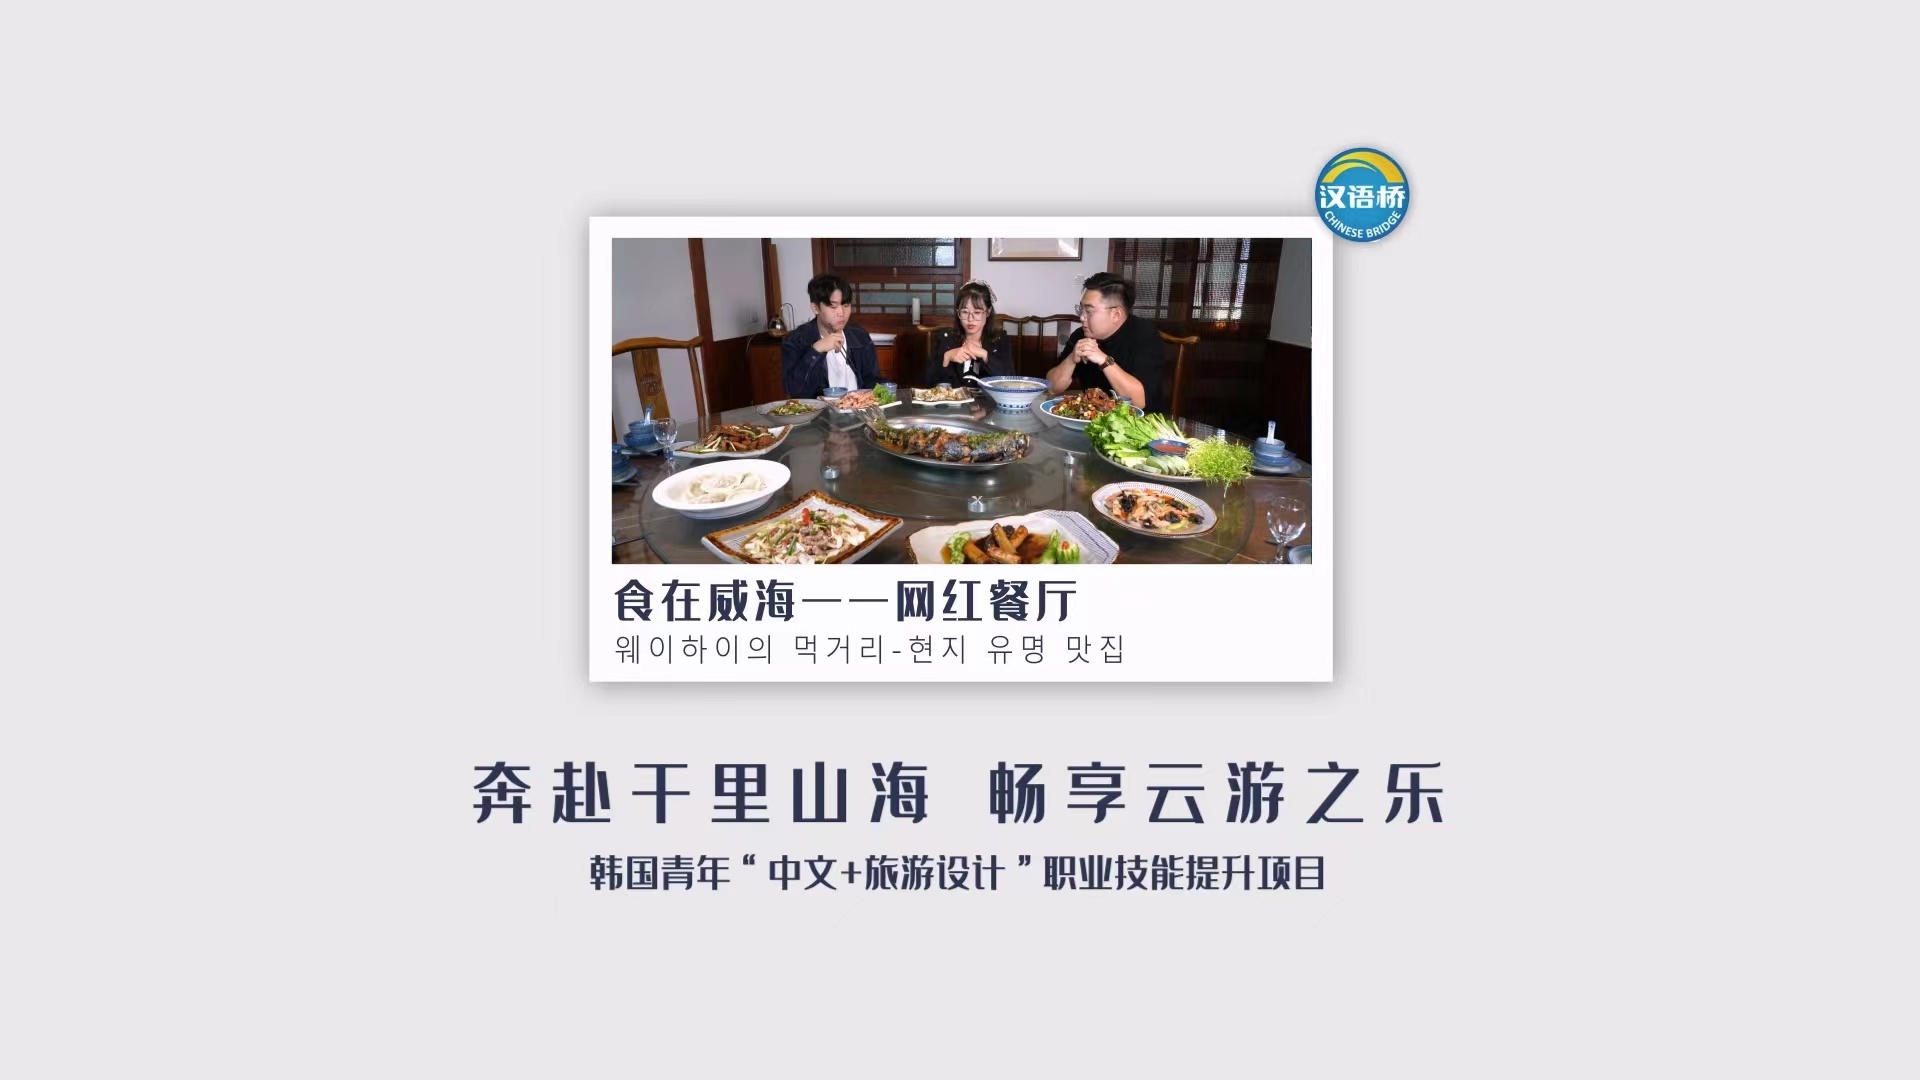 Eat at Weihai——Restaurant of Internet celebrity